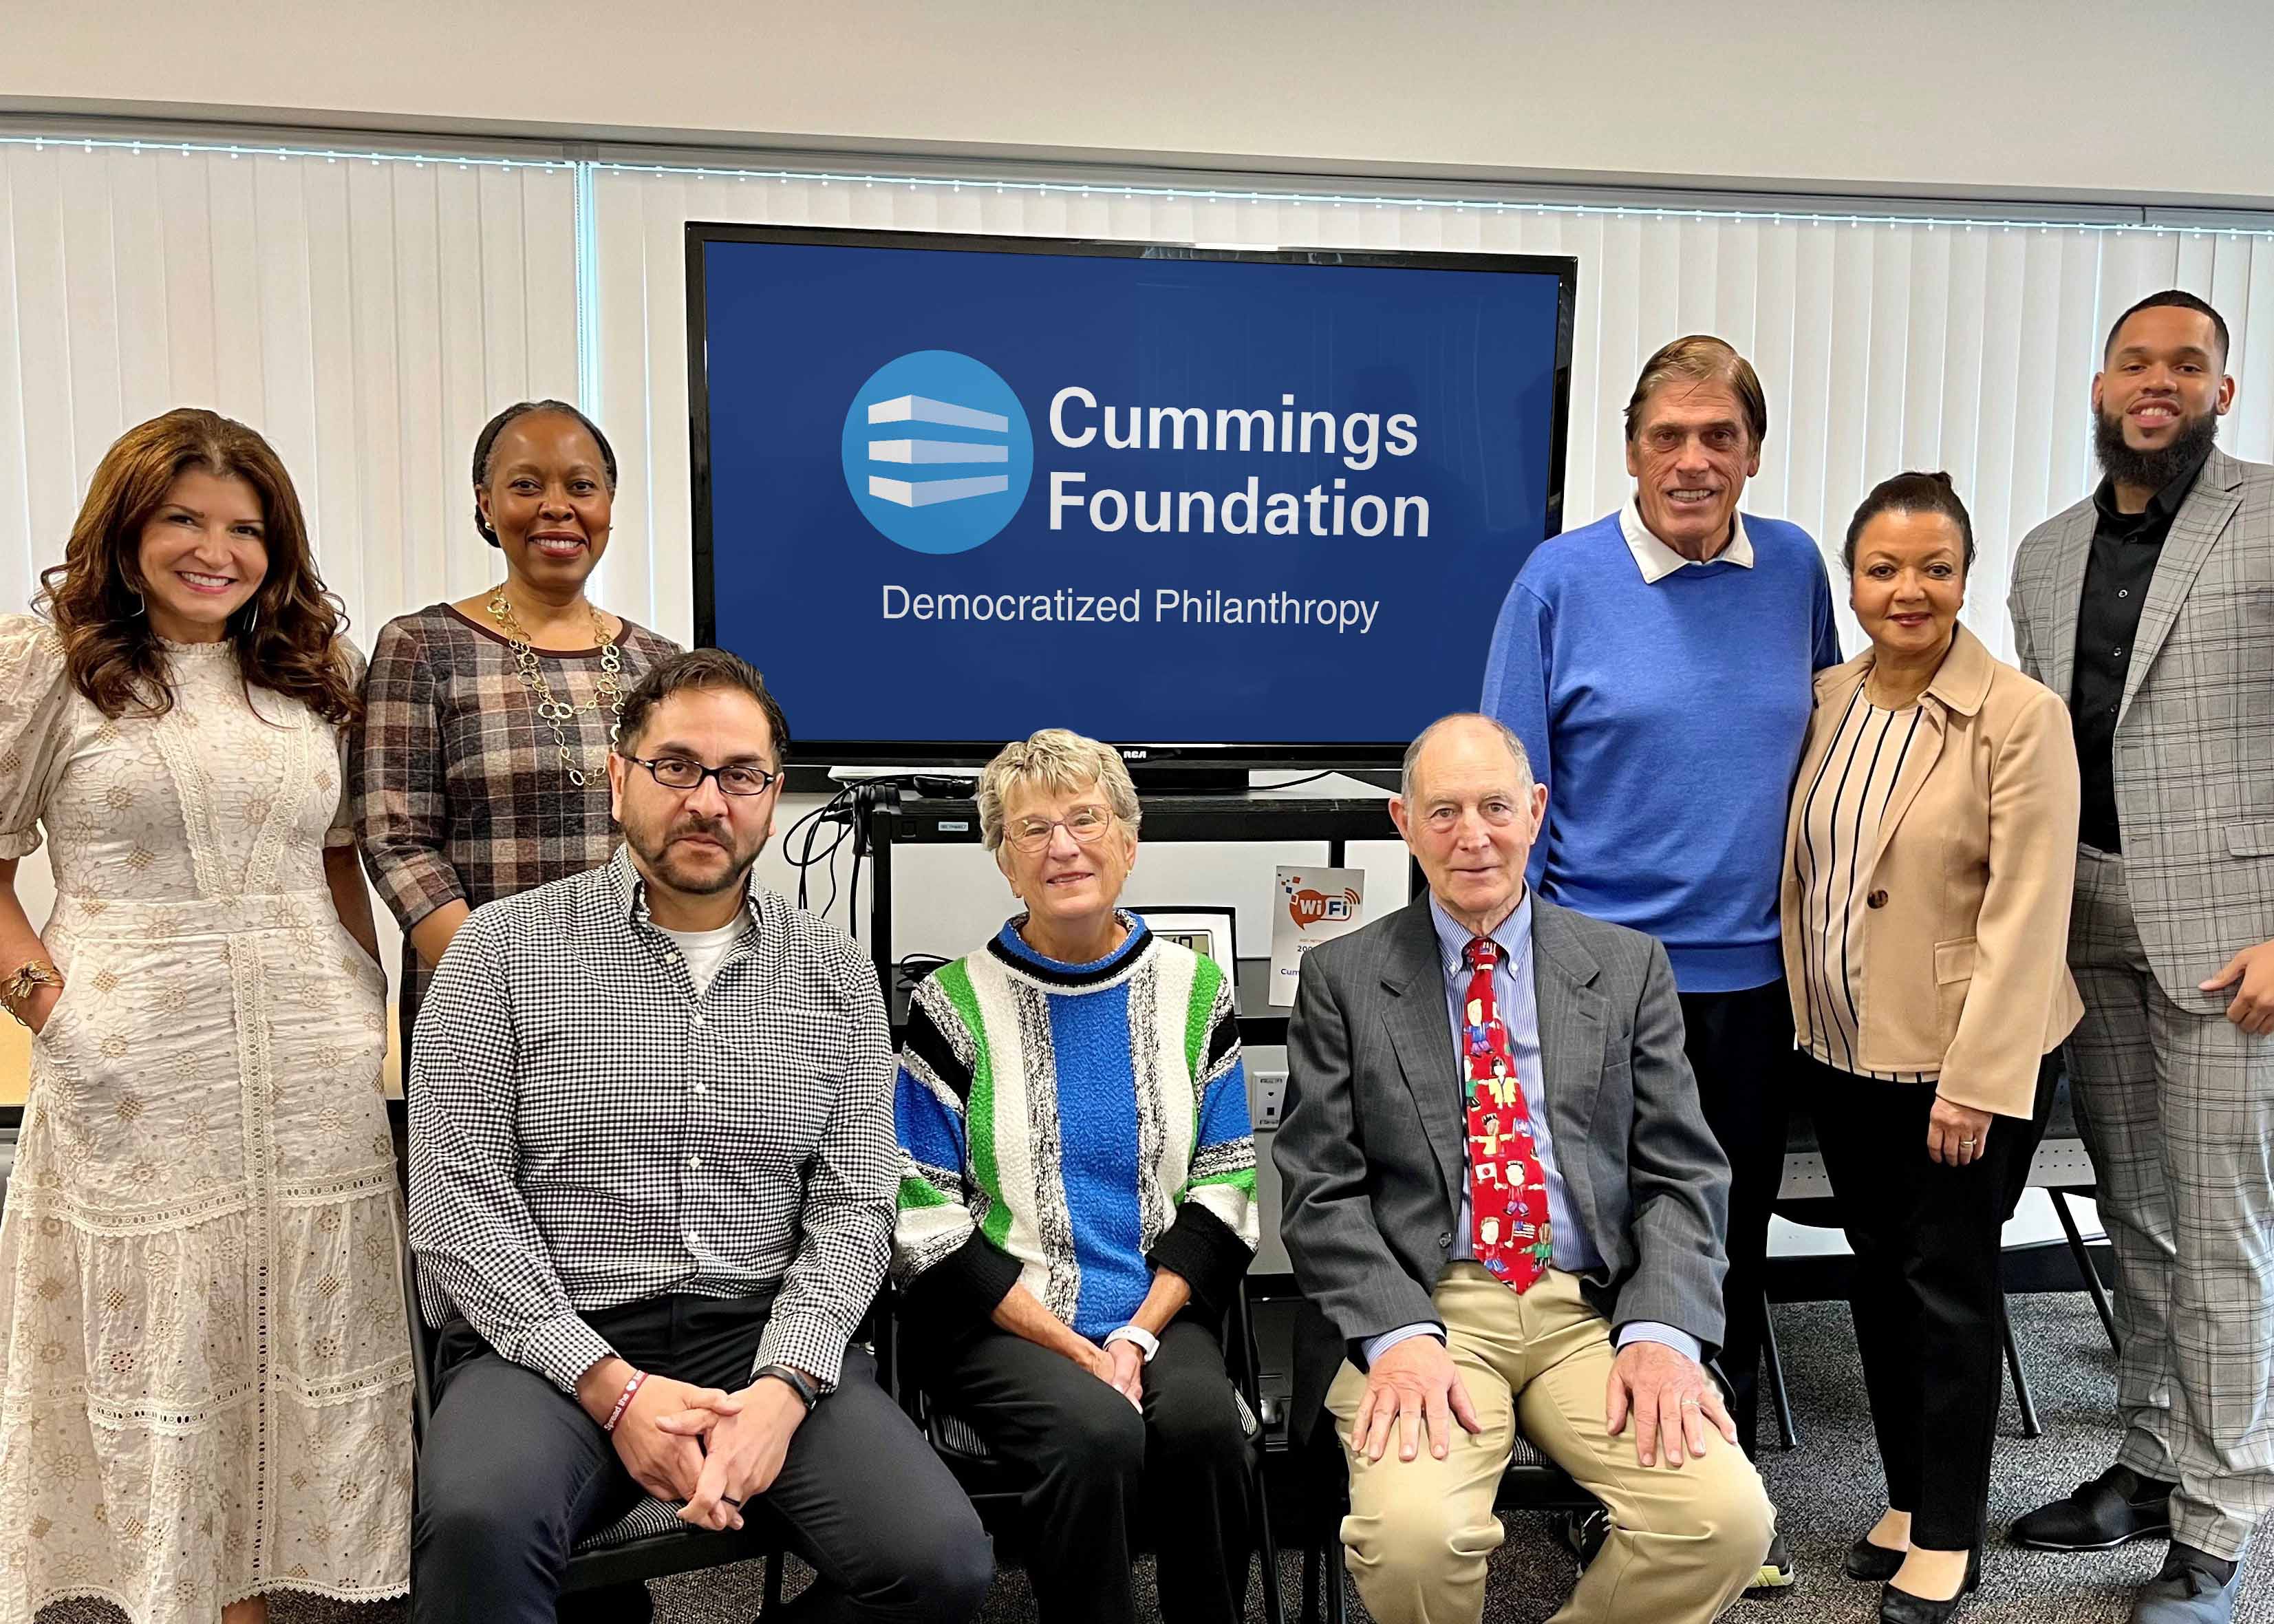 Cummings Foundation volunteers